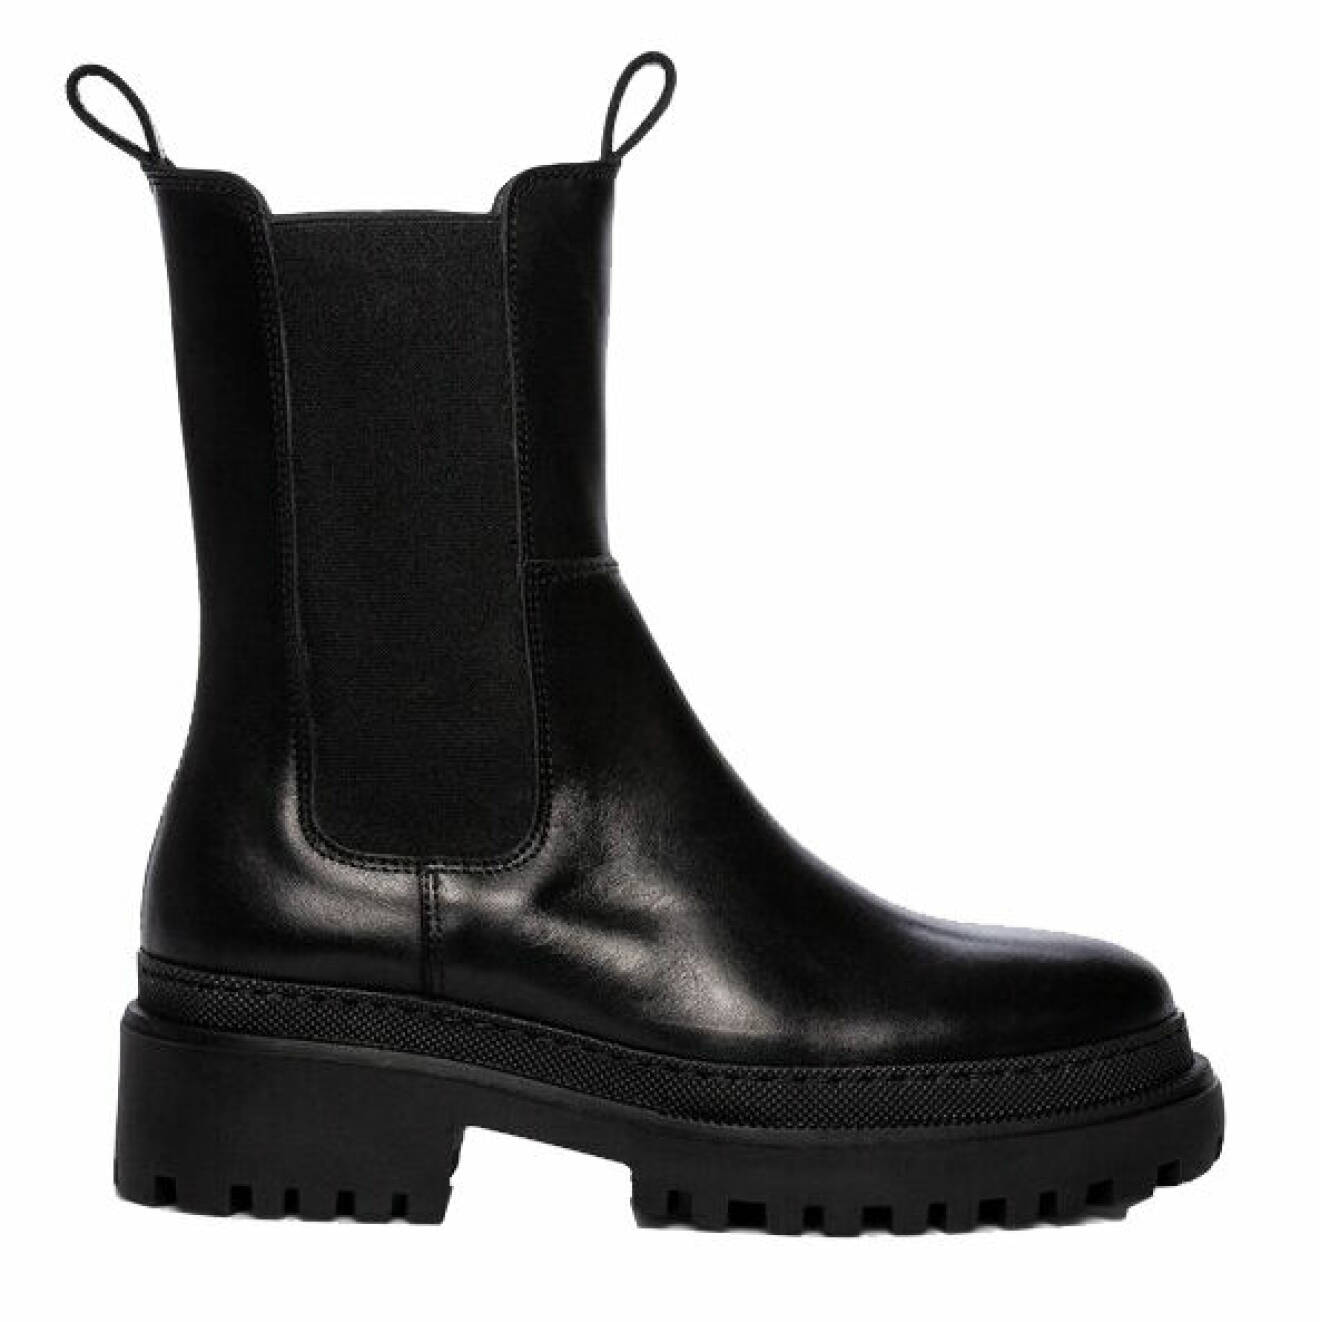 bästa köpen i oktober - svarta chunky boots